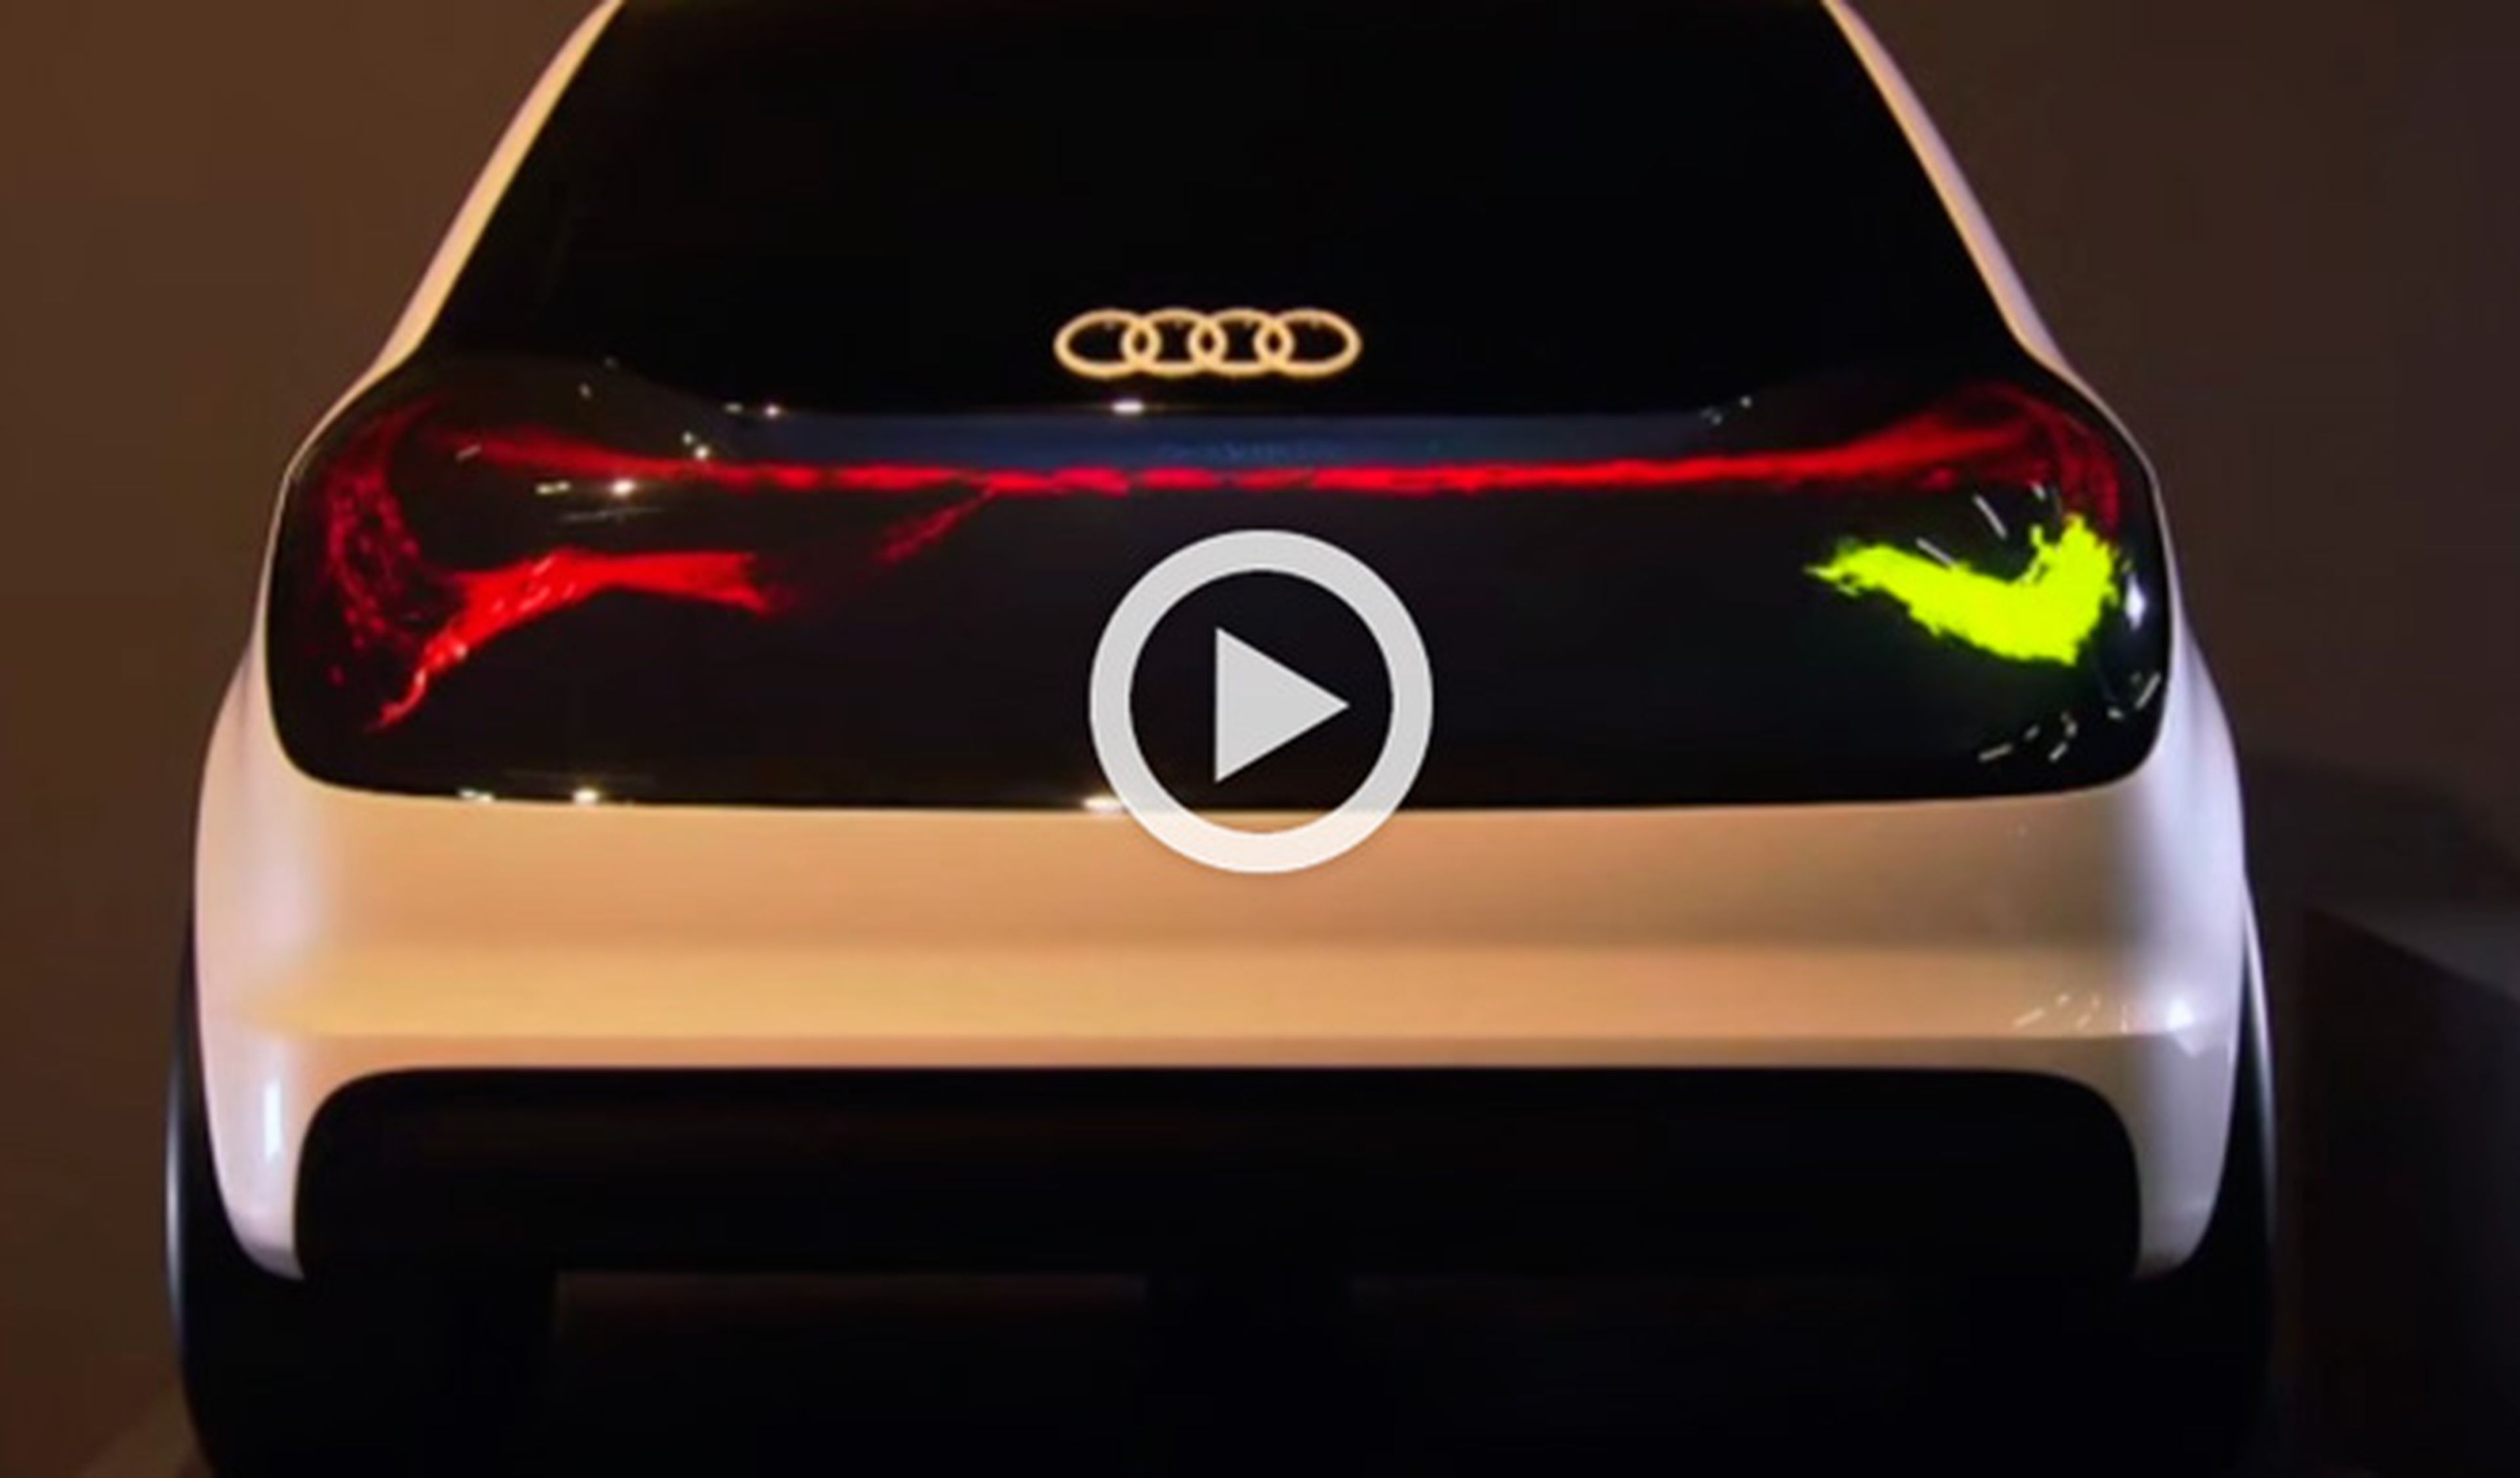 Vídeo: así funcionan las nuevas luces OLED del Audi Swarm